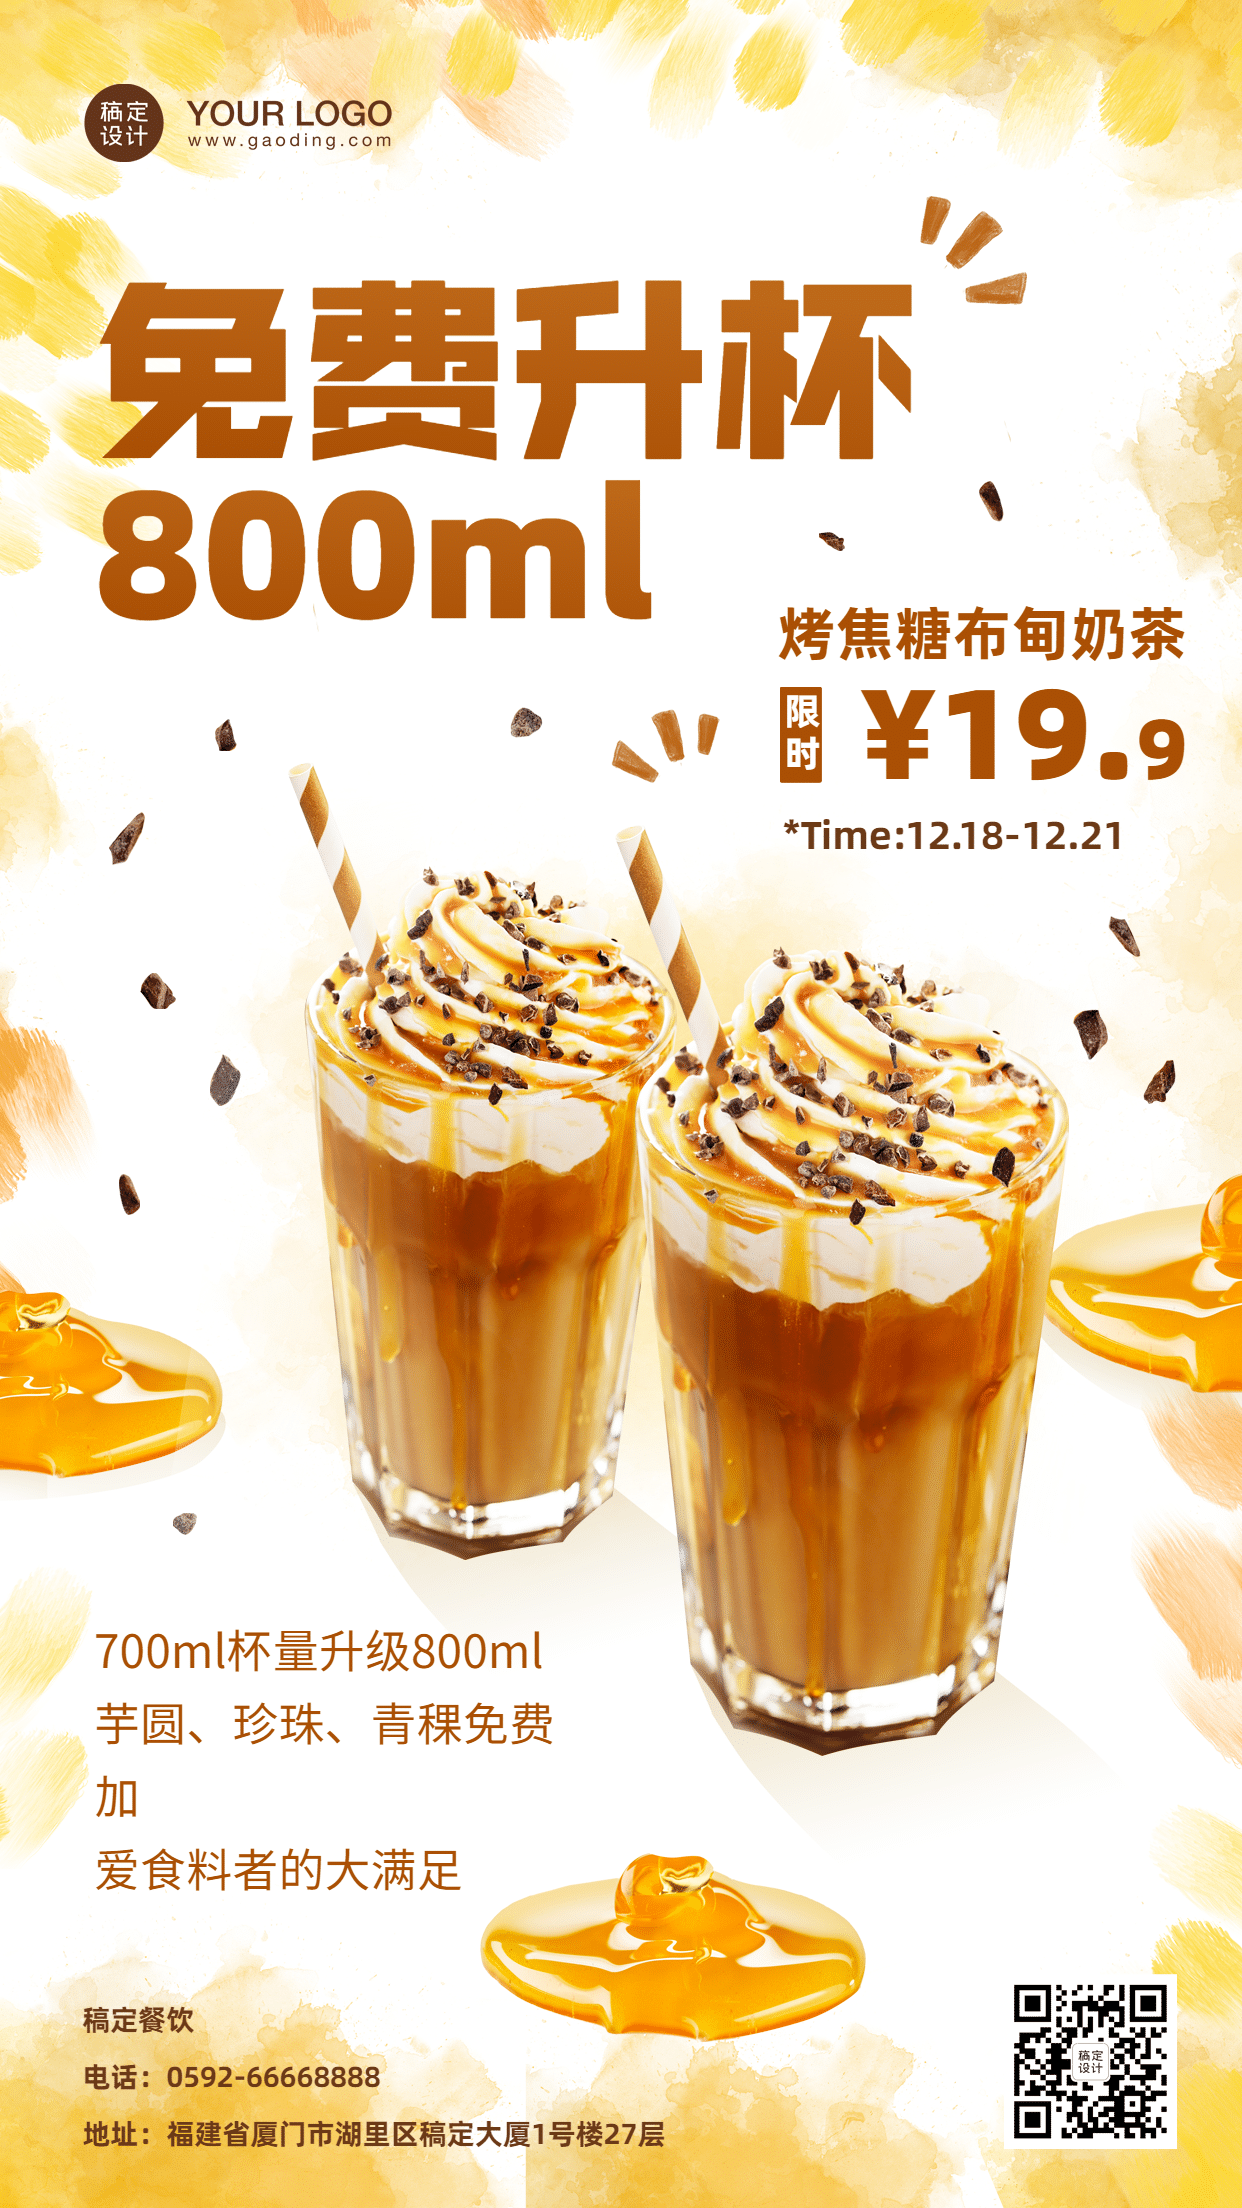 奶茶饮品产品营销实景竖版海报预览效果